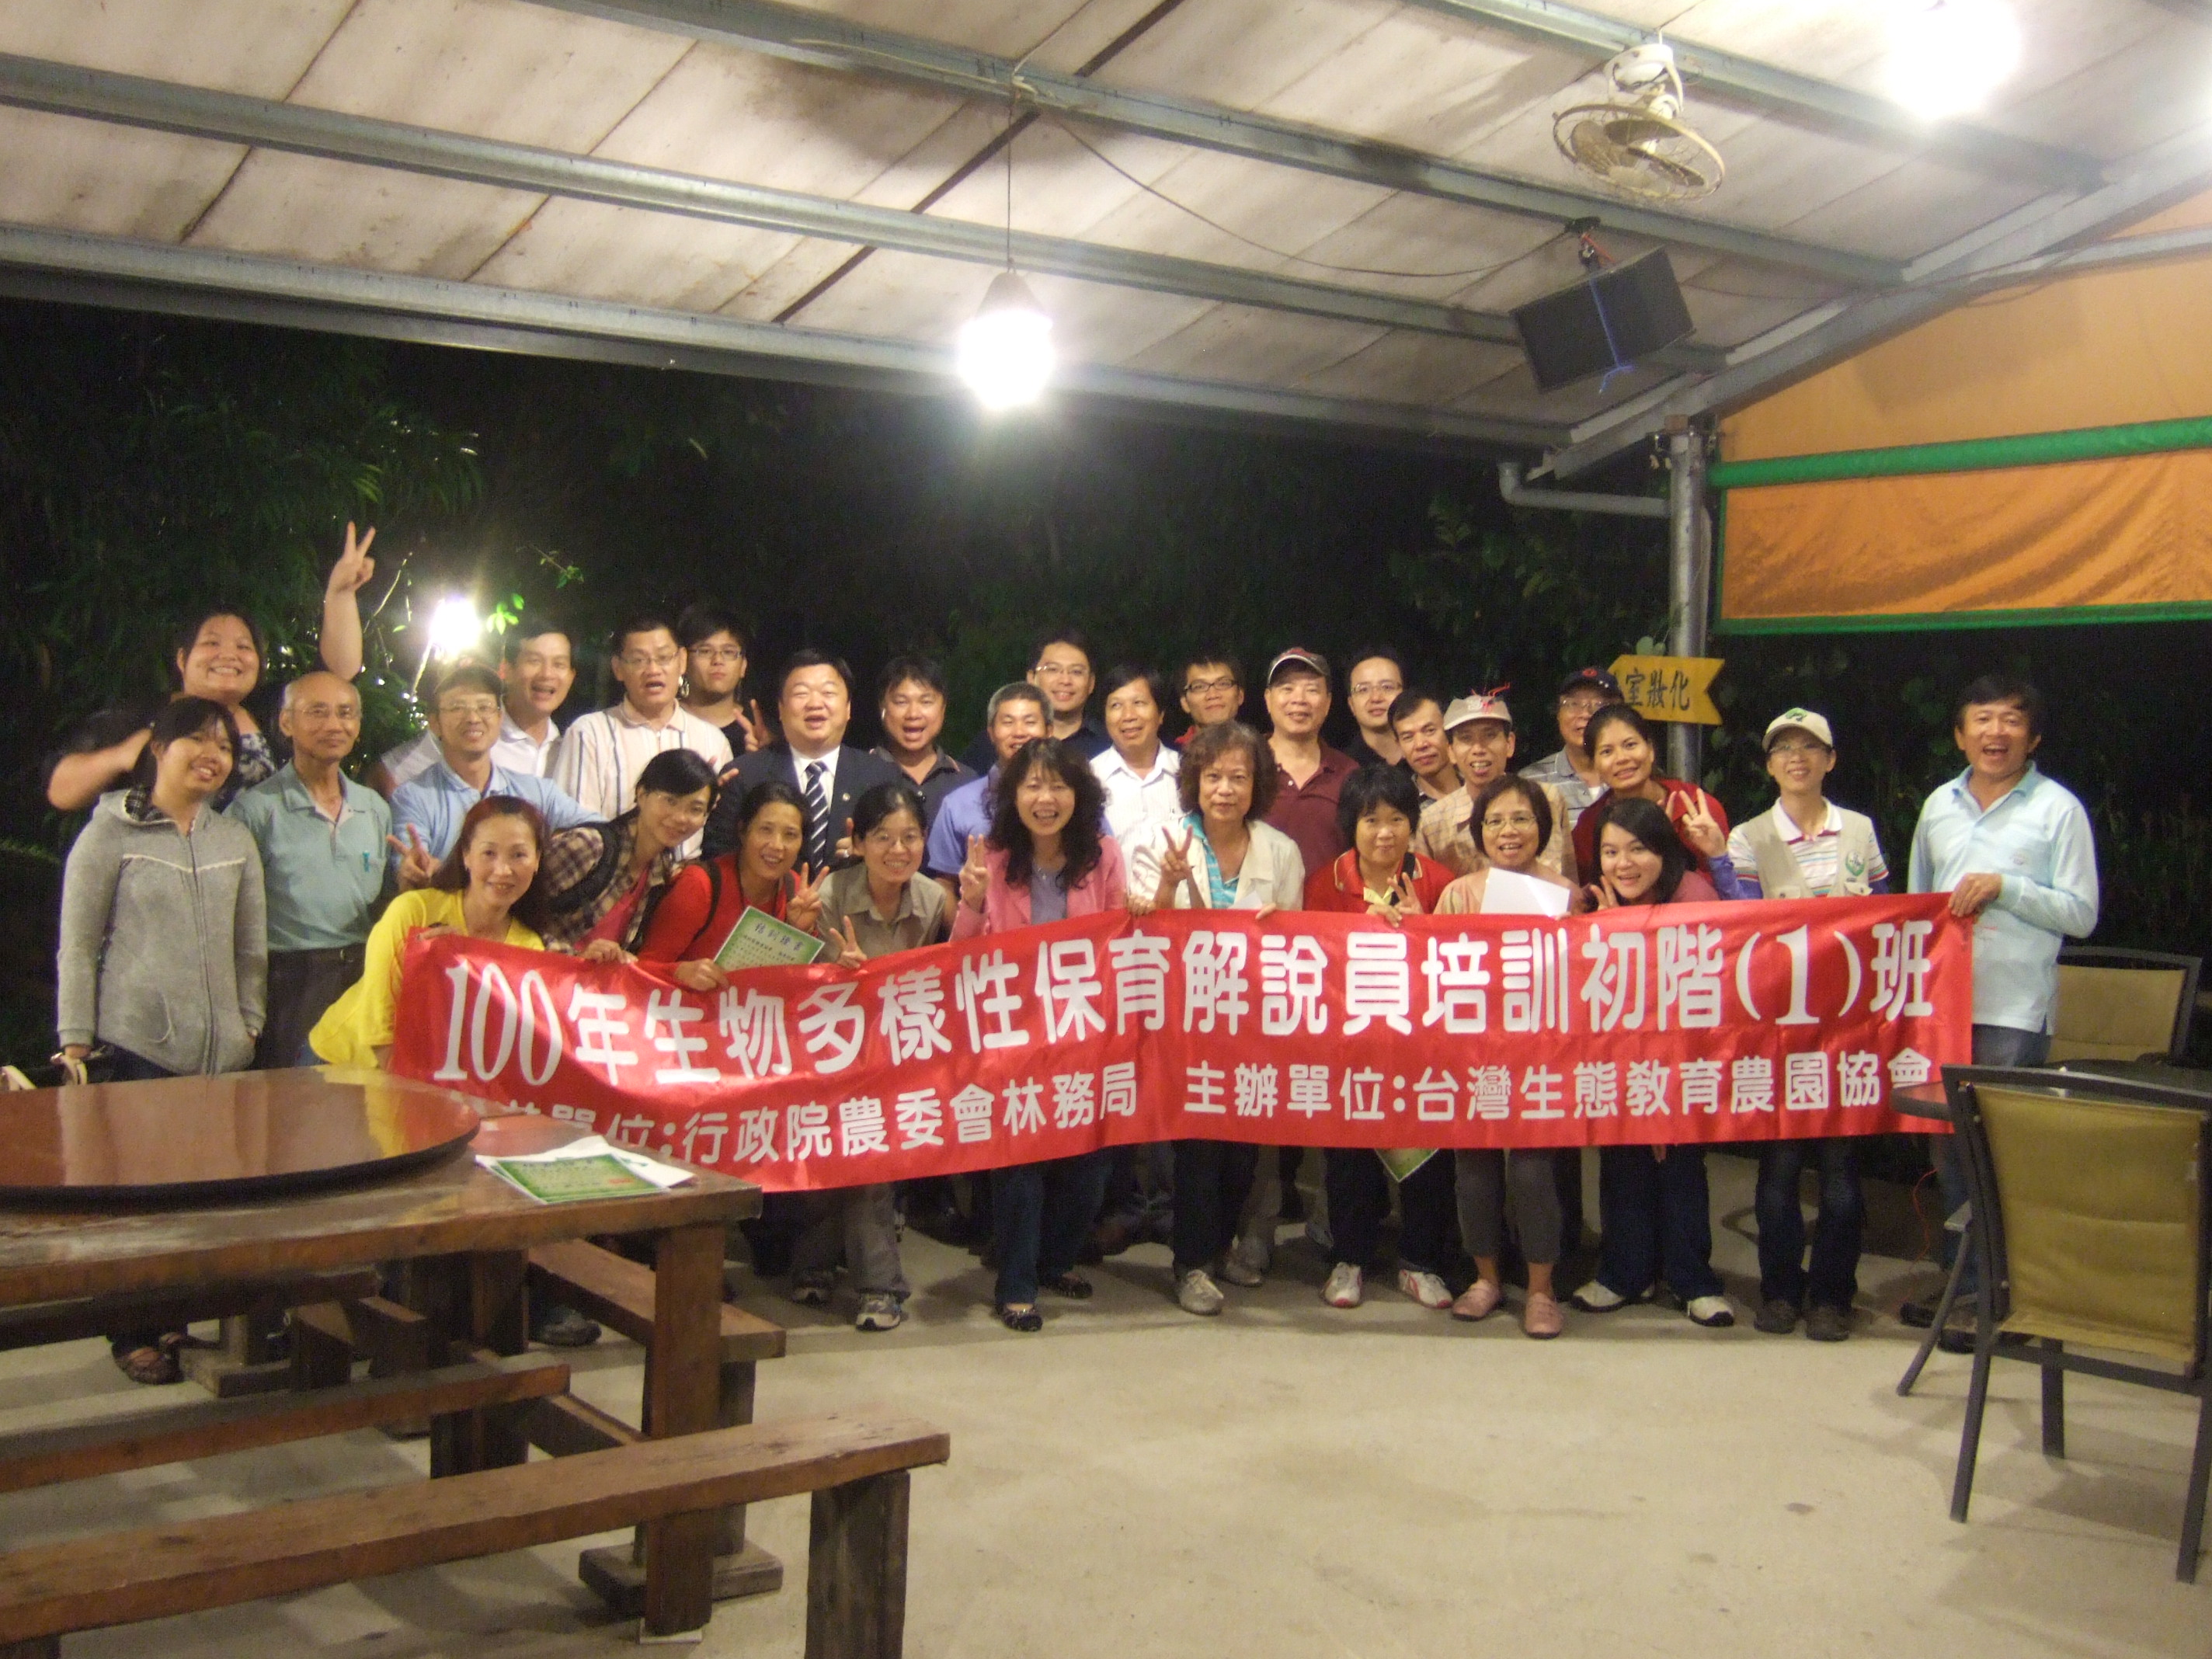 100年生態觀光導覽解說員培訓初階認證班第一梯次精彩活動紀錄-台灣生態教育農園協會